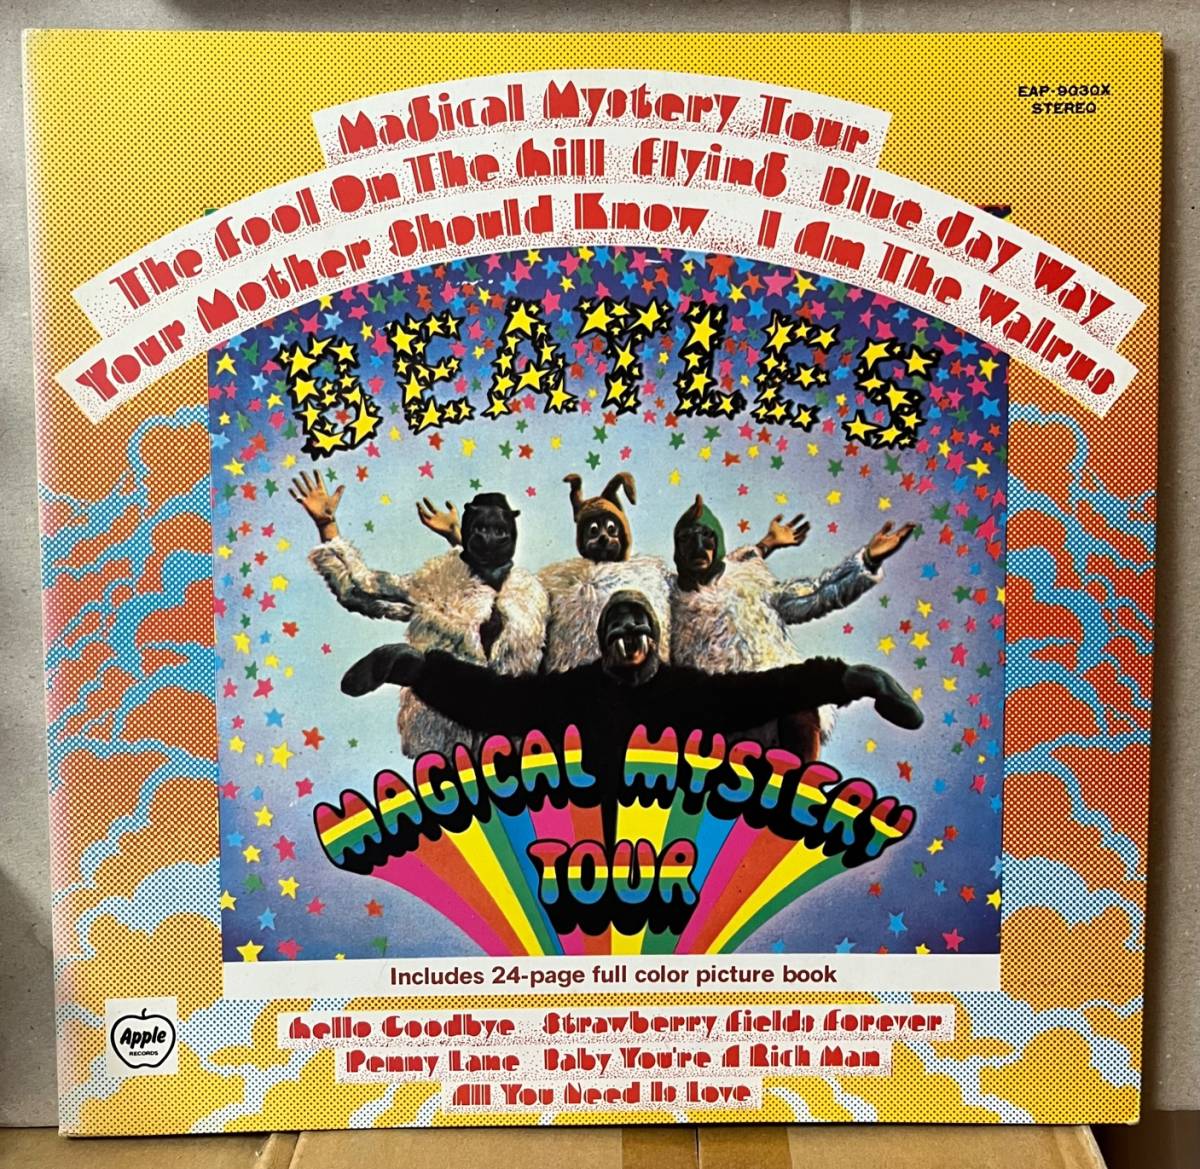 ザ・ビートルズ マジカル・ミステリー・ツアー The Beatles Magical Mystery Tour LP 日本盤 東芝EMI EAP9030X_画像1